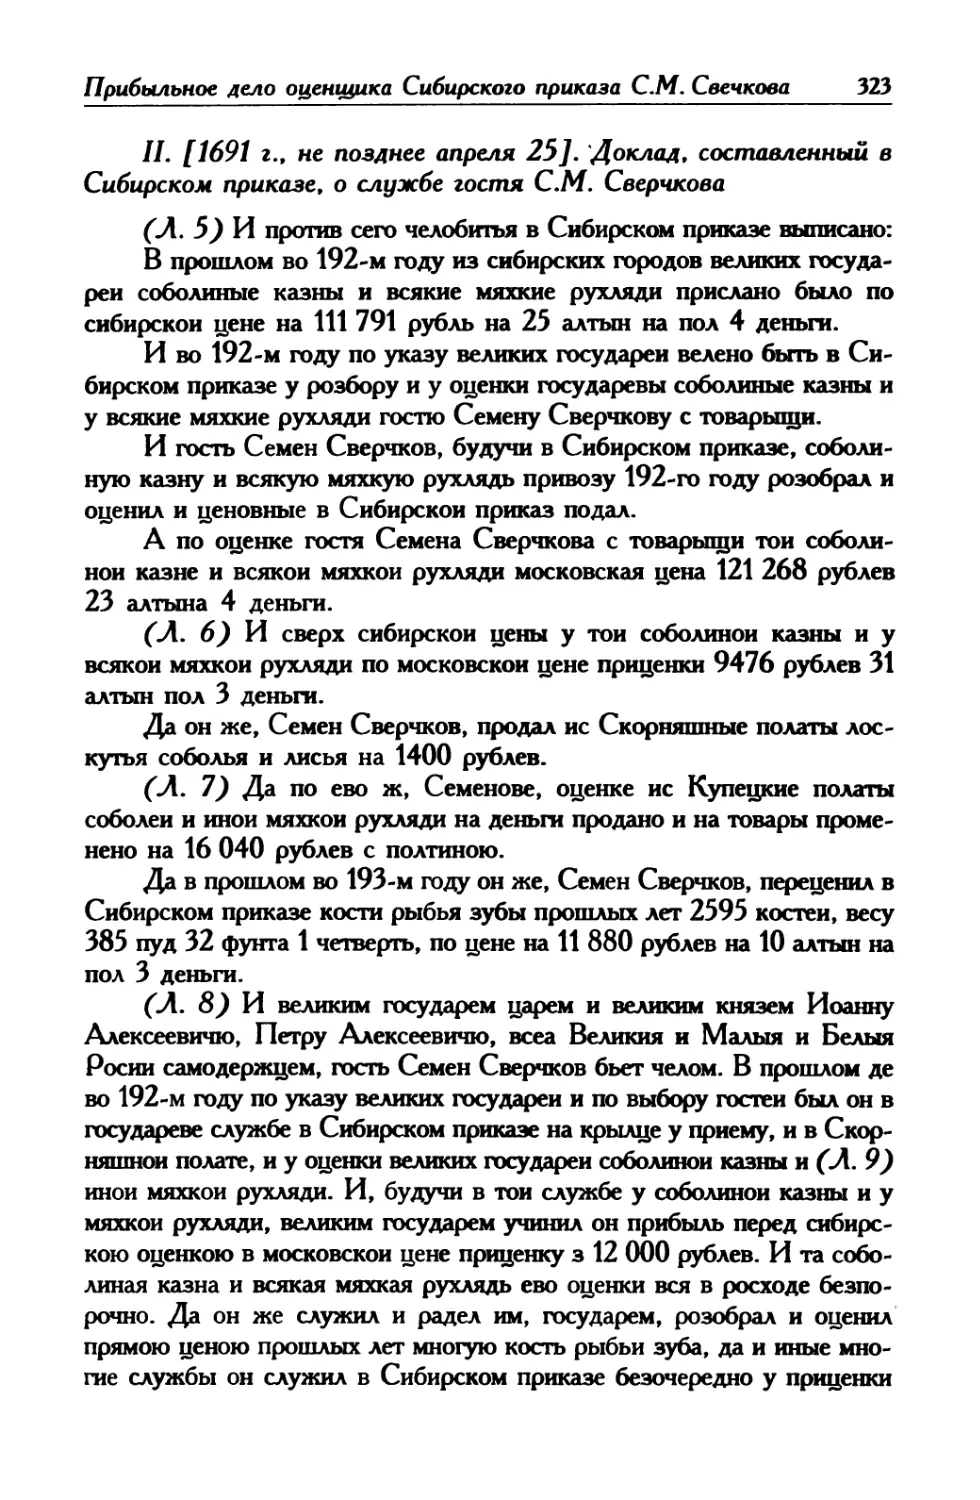 II. [1691 г., не позднее апреля 25]. Доклад, составленный в Сибирском приказе, о службе гостя С. М. Сверчкова